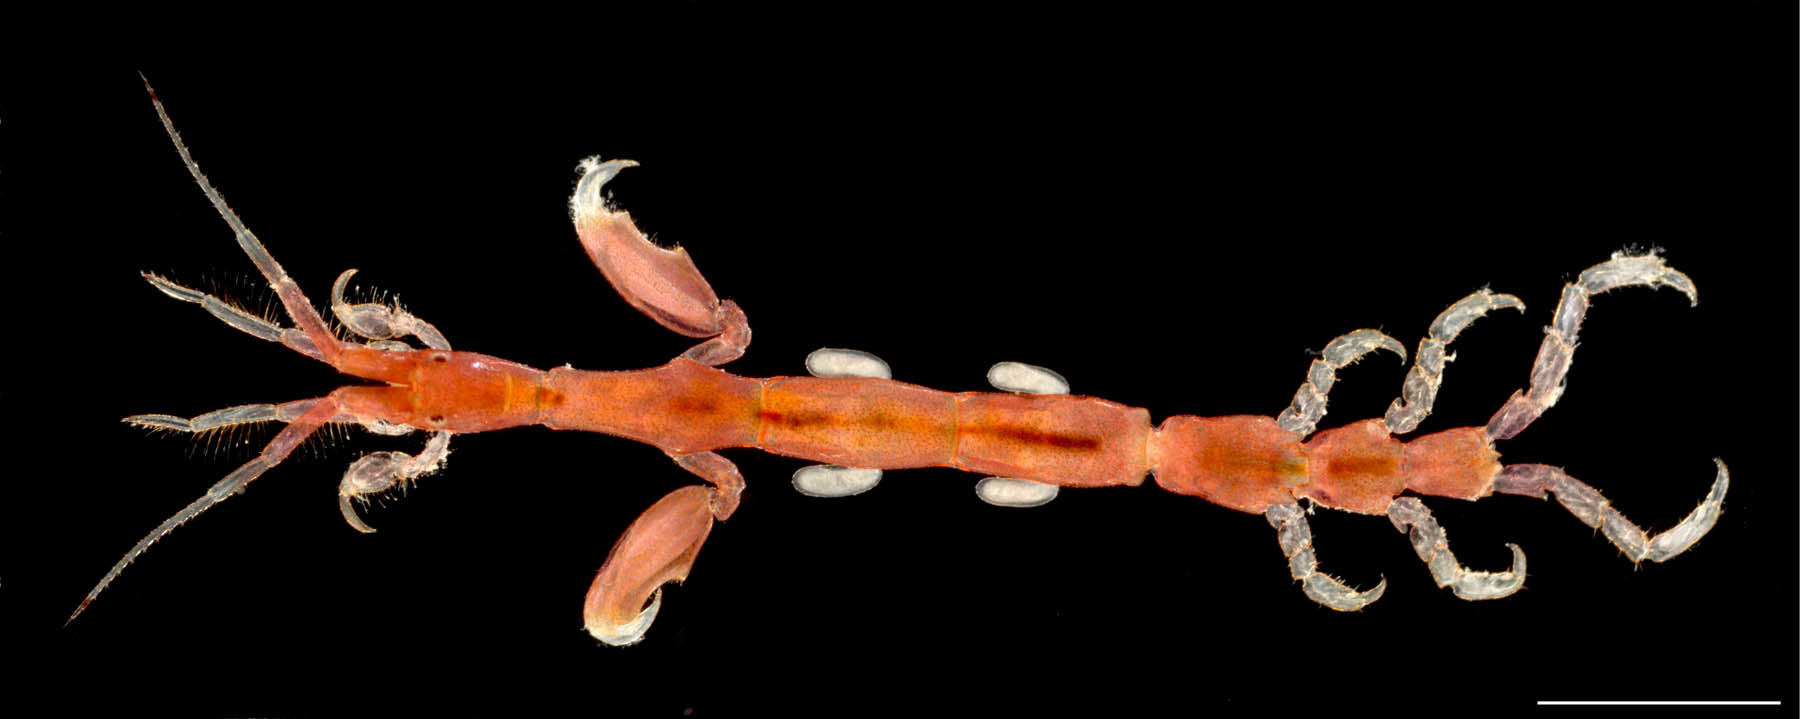 ホソワレカラ(Caprella danilevskii)の画像